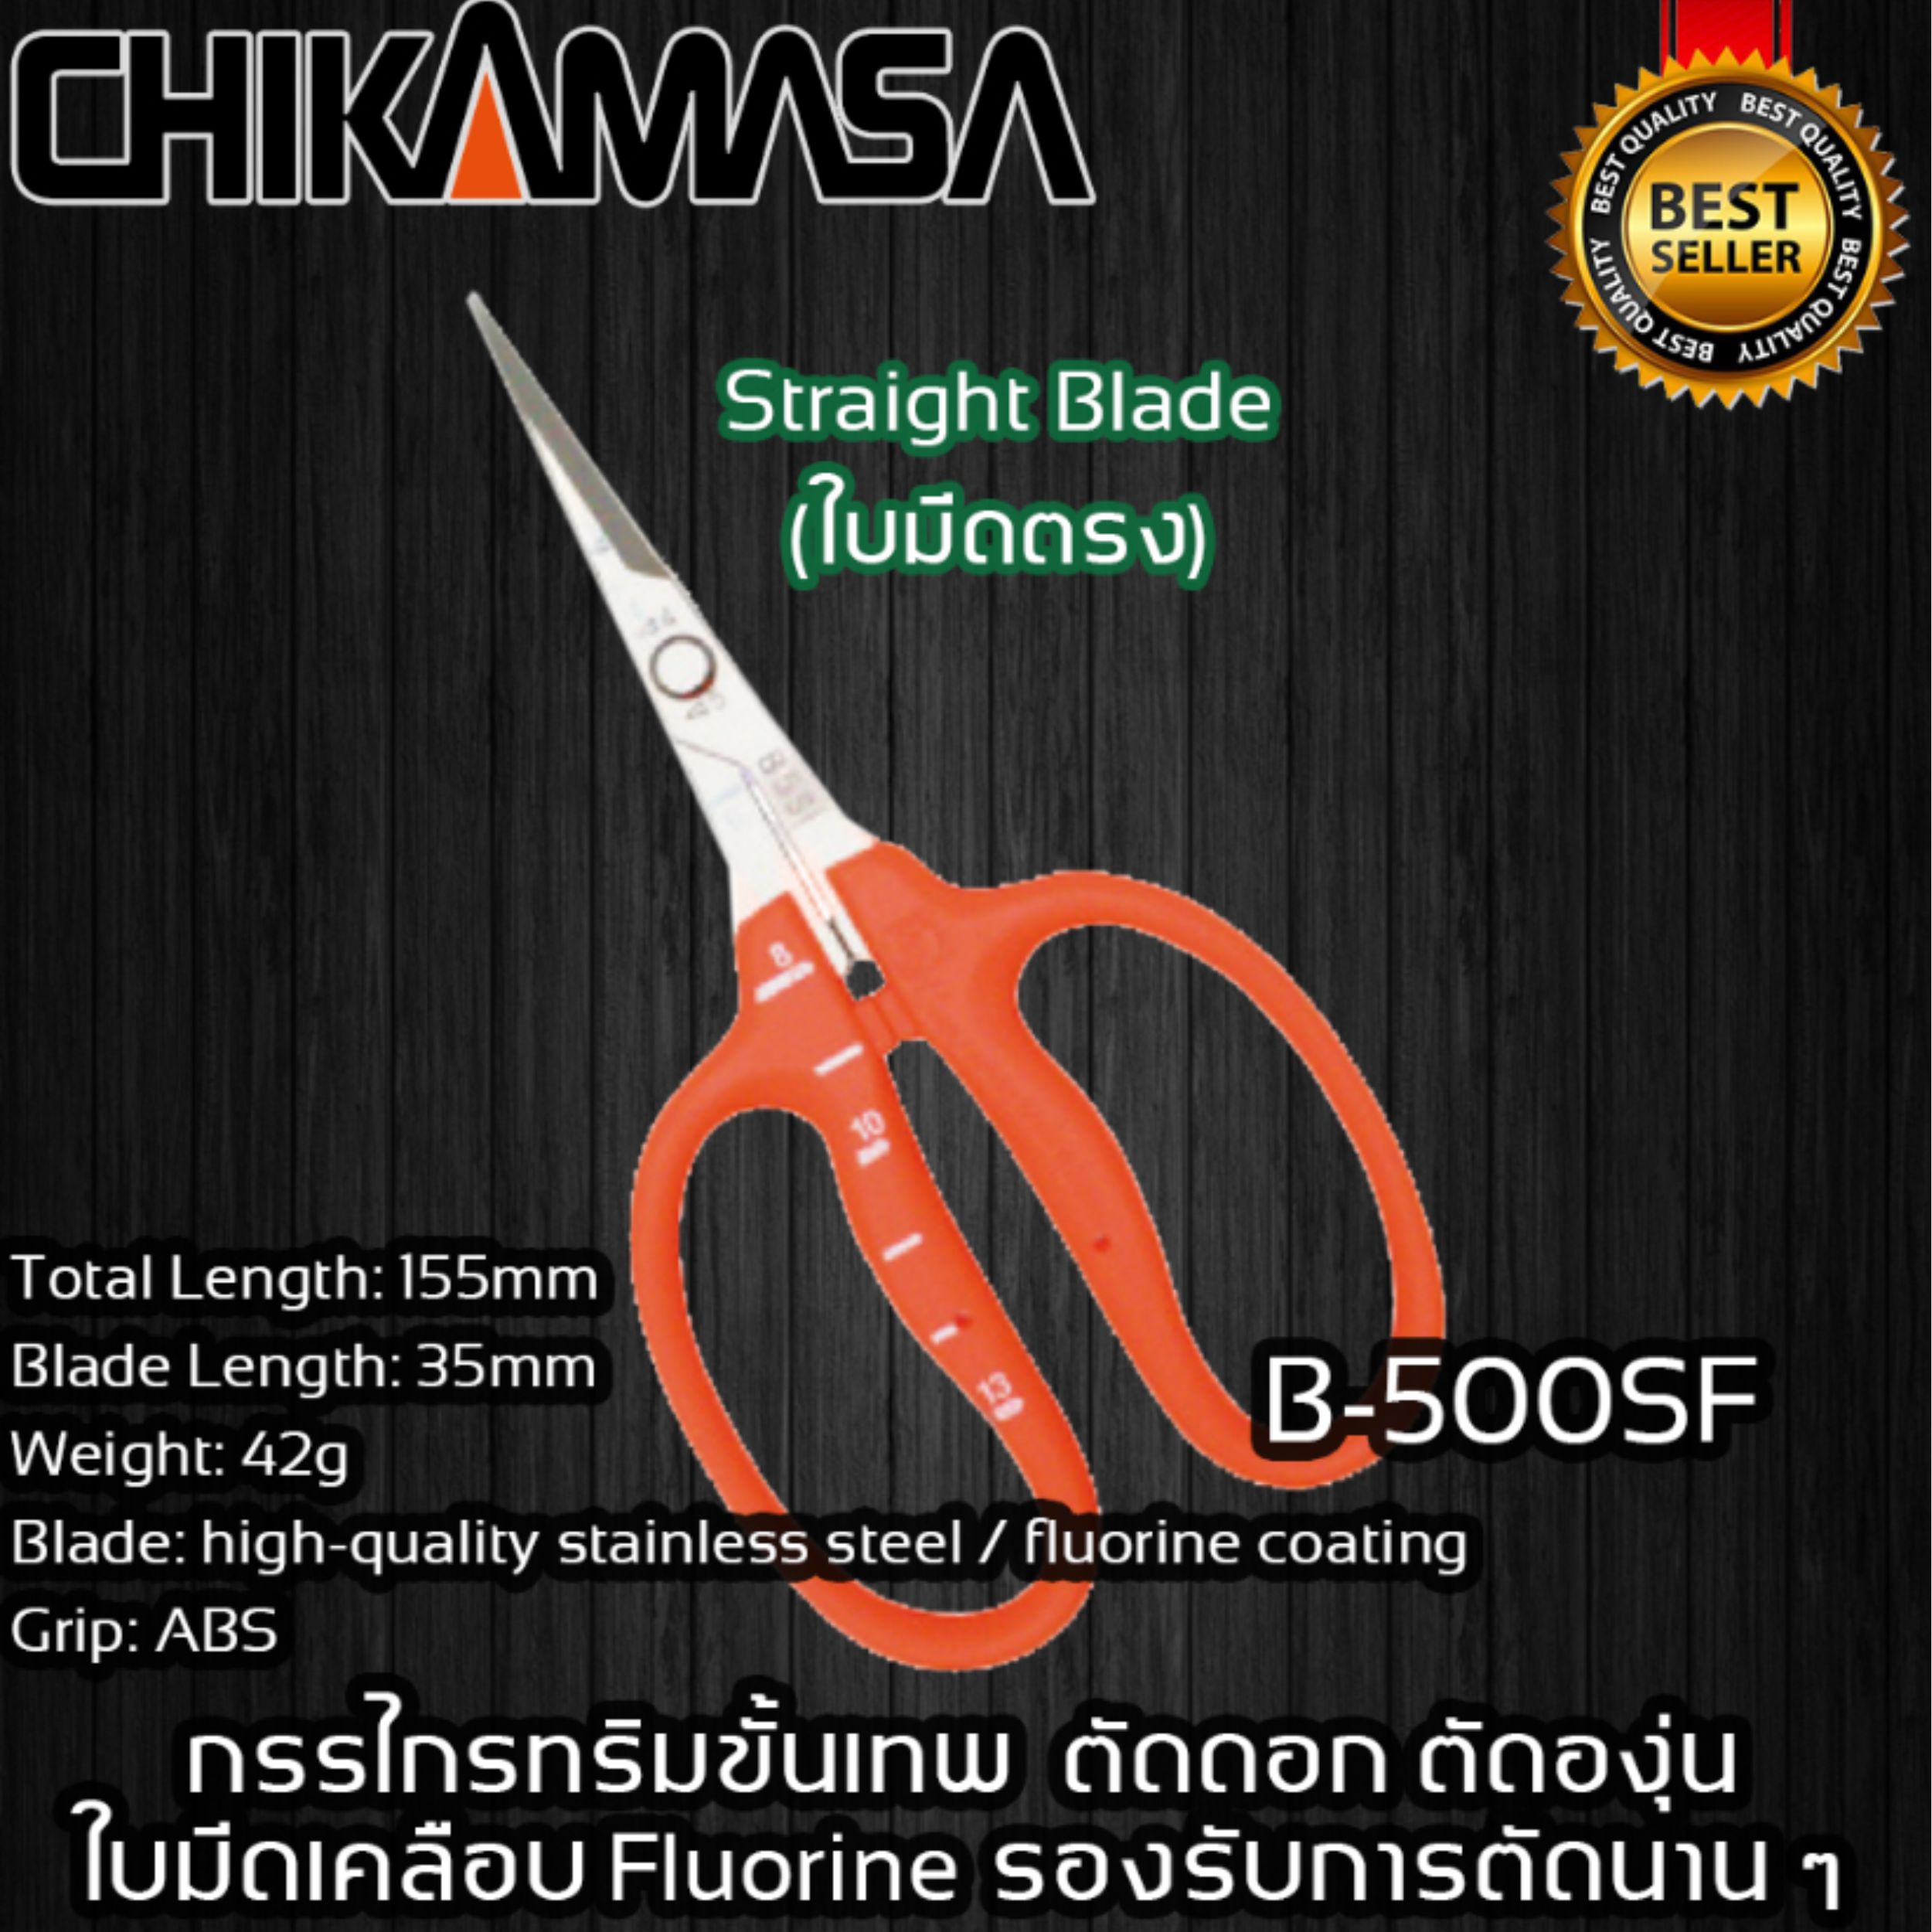 Chikamasa B-500SF Stainless Steel Scissors w/ Fluorine Coating